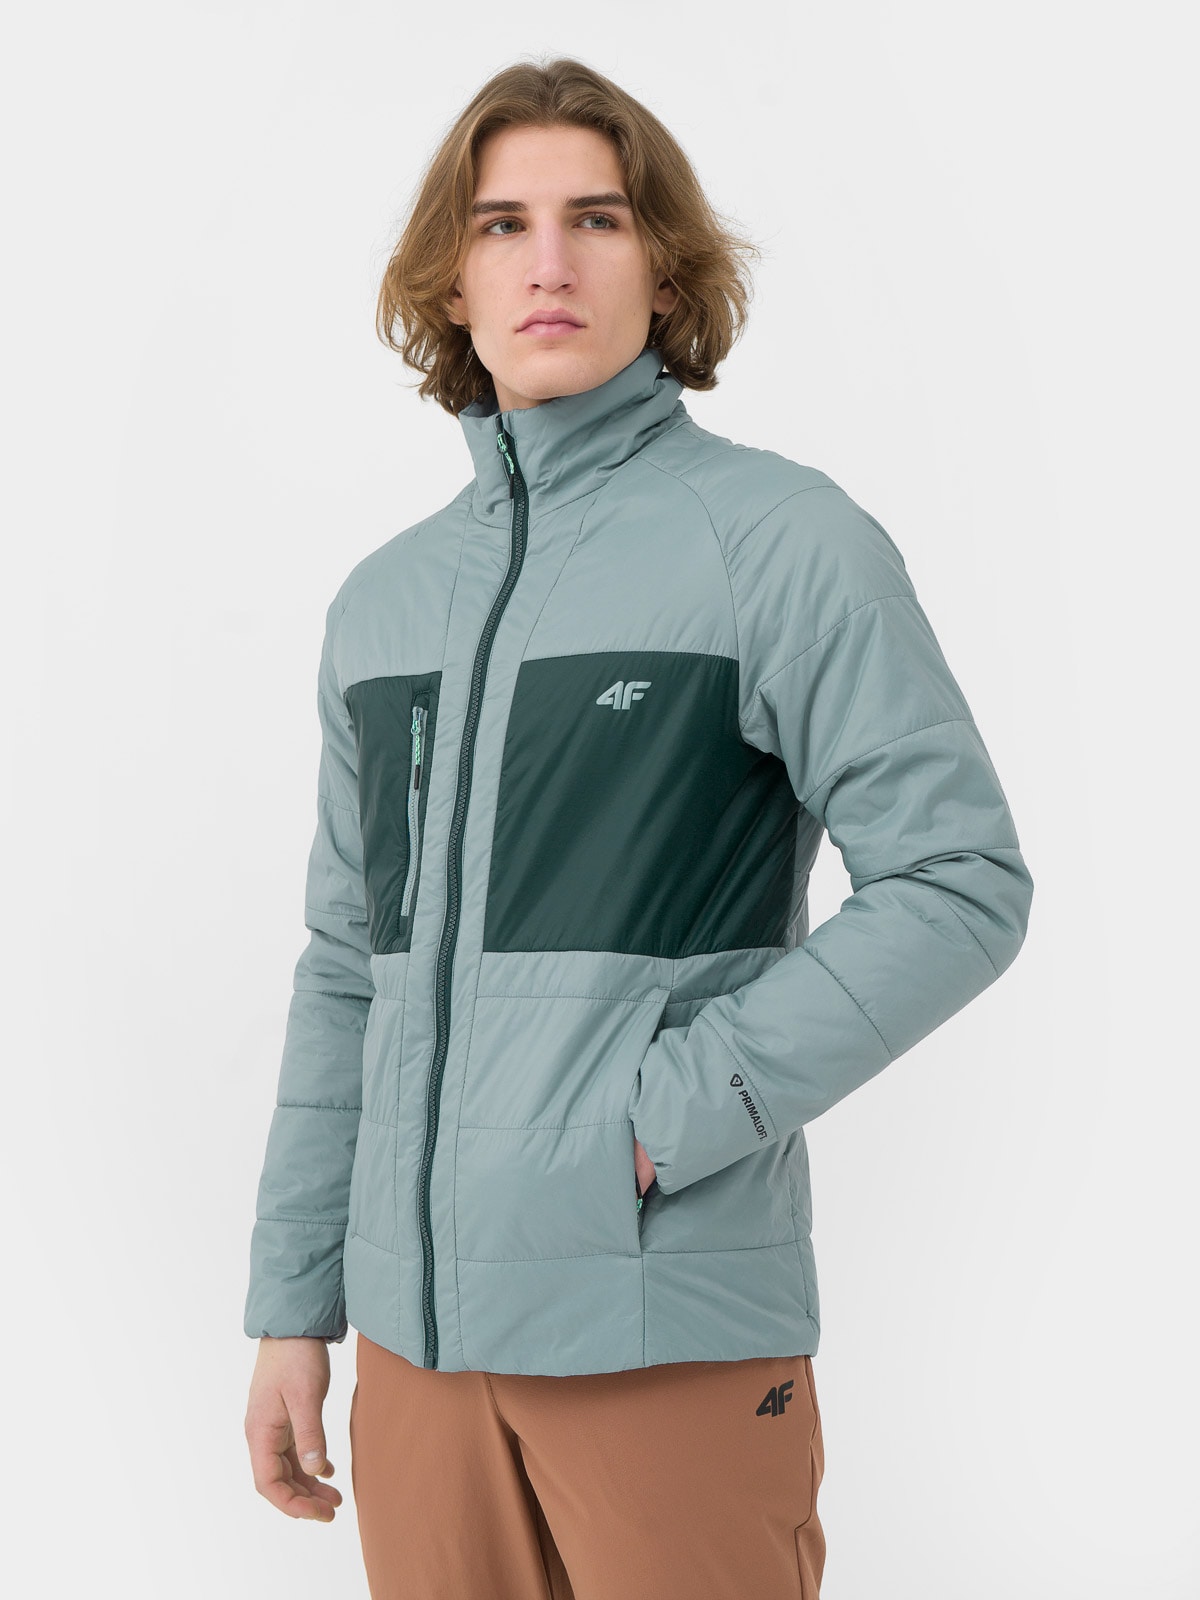 Pánska trekingová zatepľovacia bunda s recyklovanou výplňou PrimaLoft® Black Eco